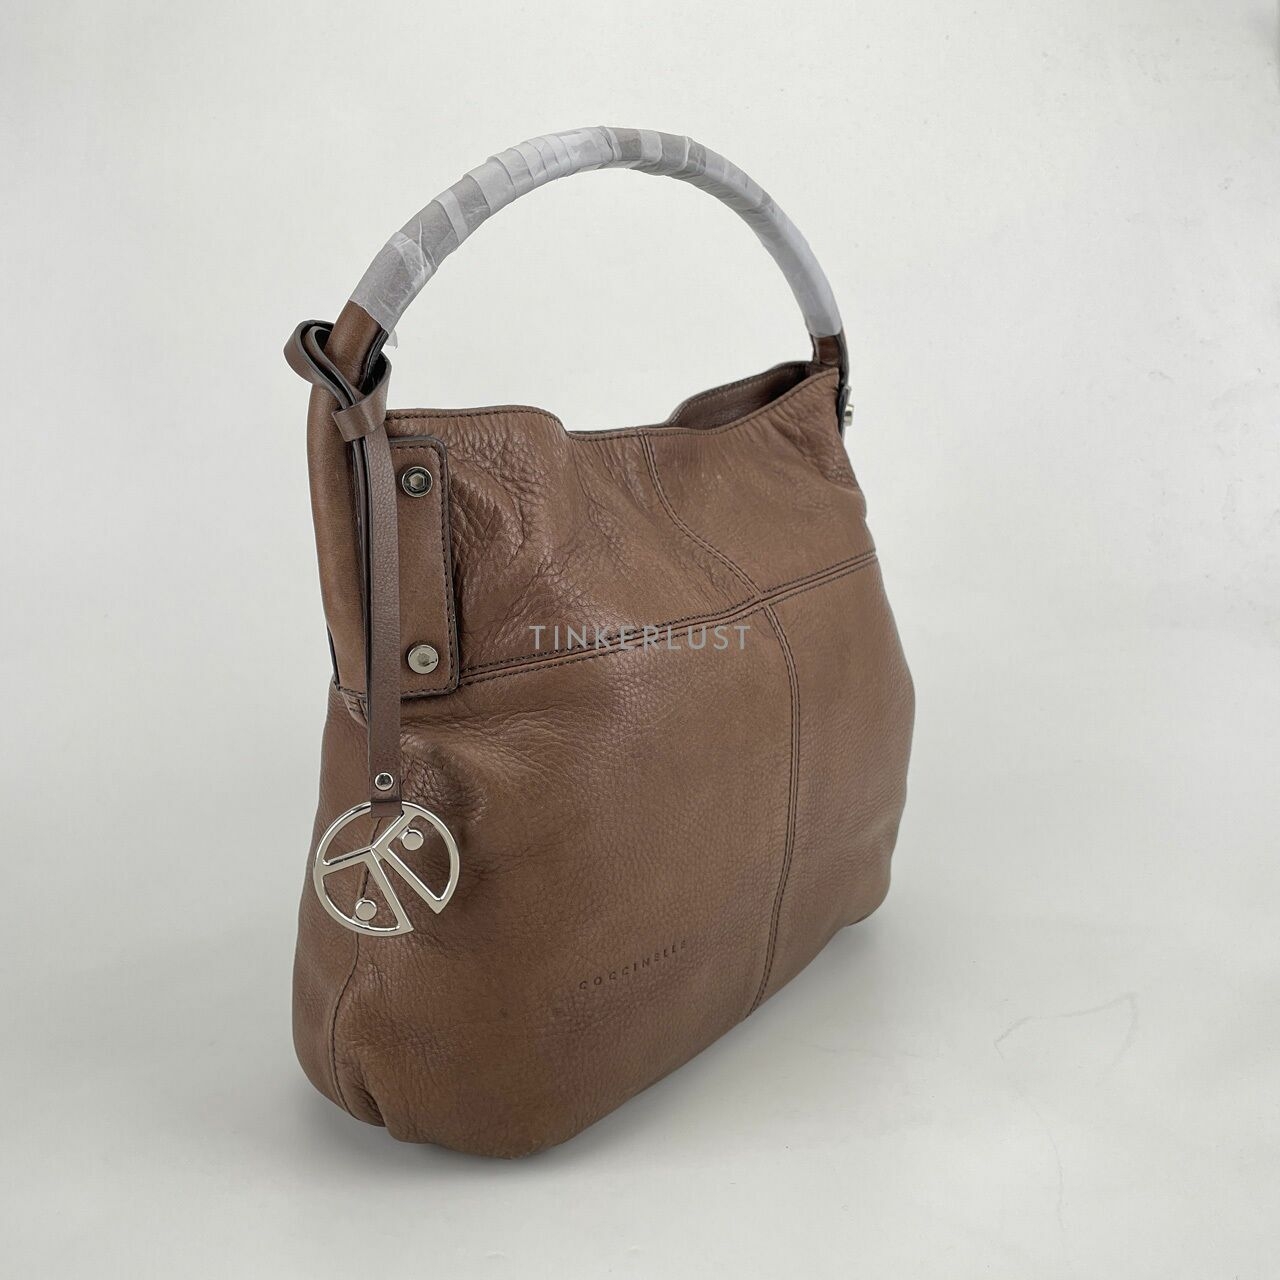 Coccinelle Brown Shoulder Bag